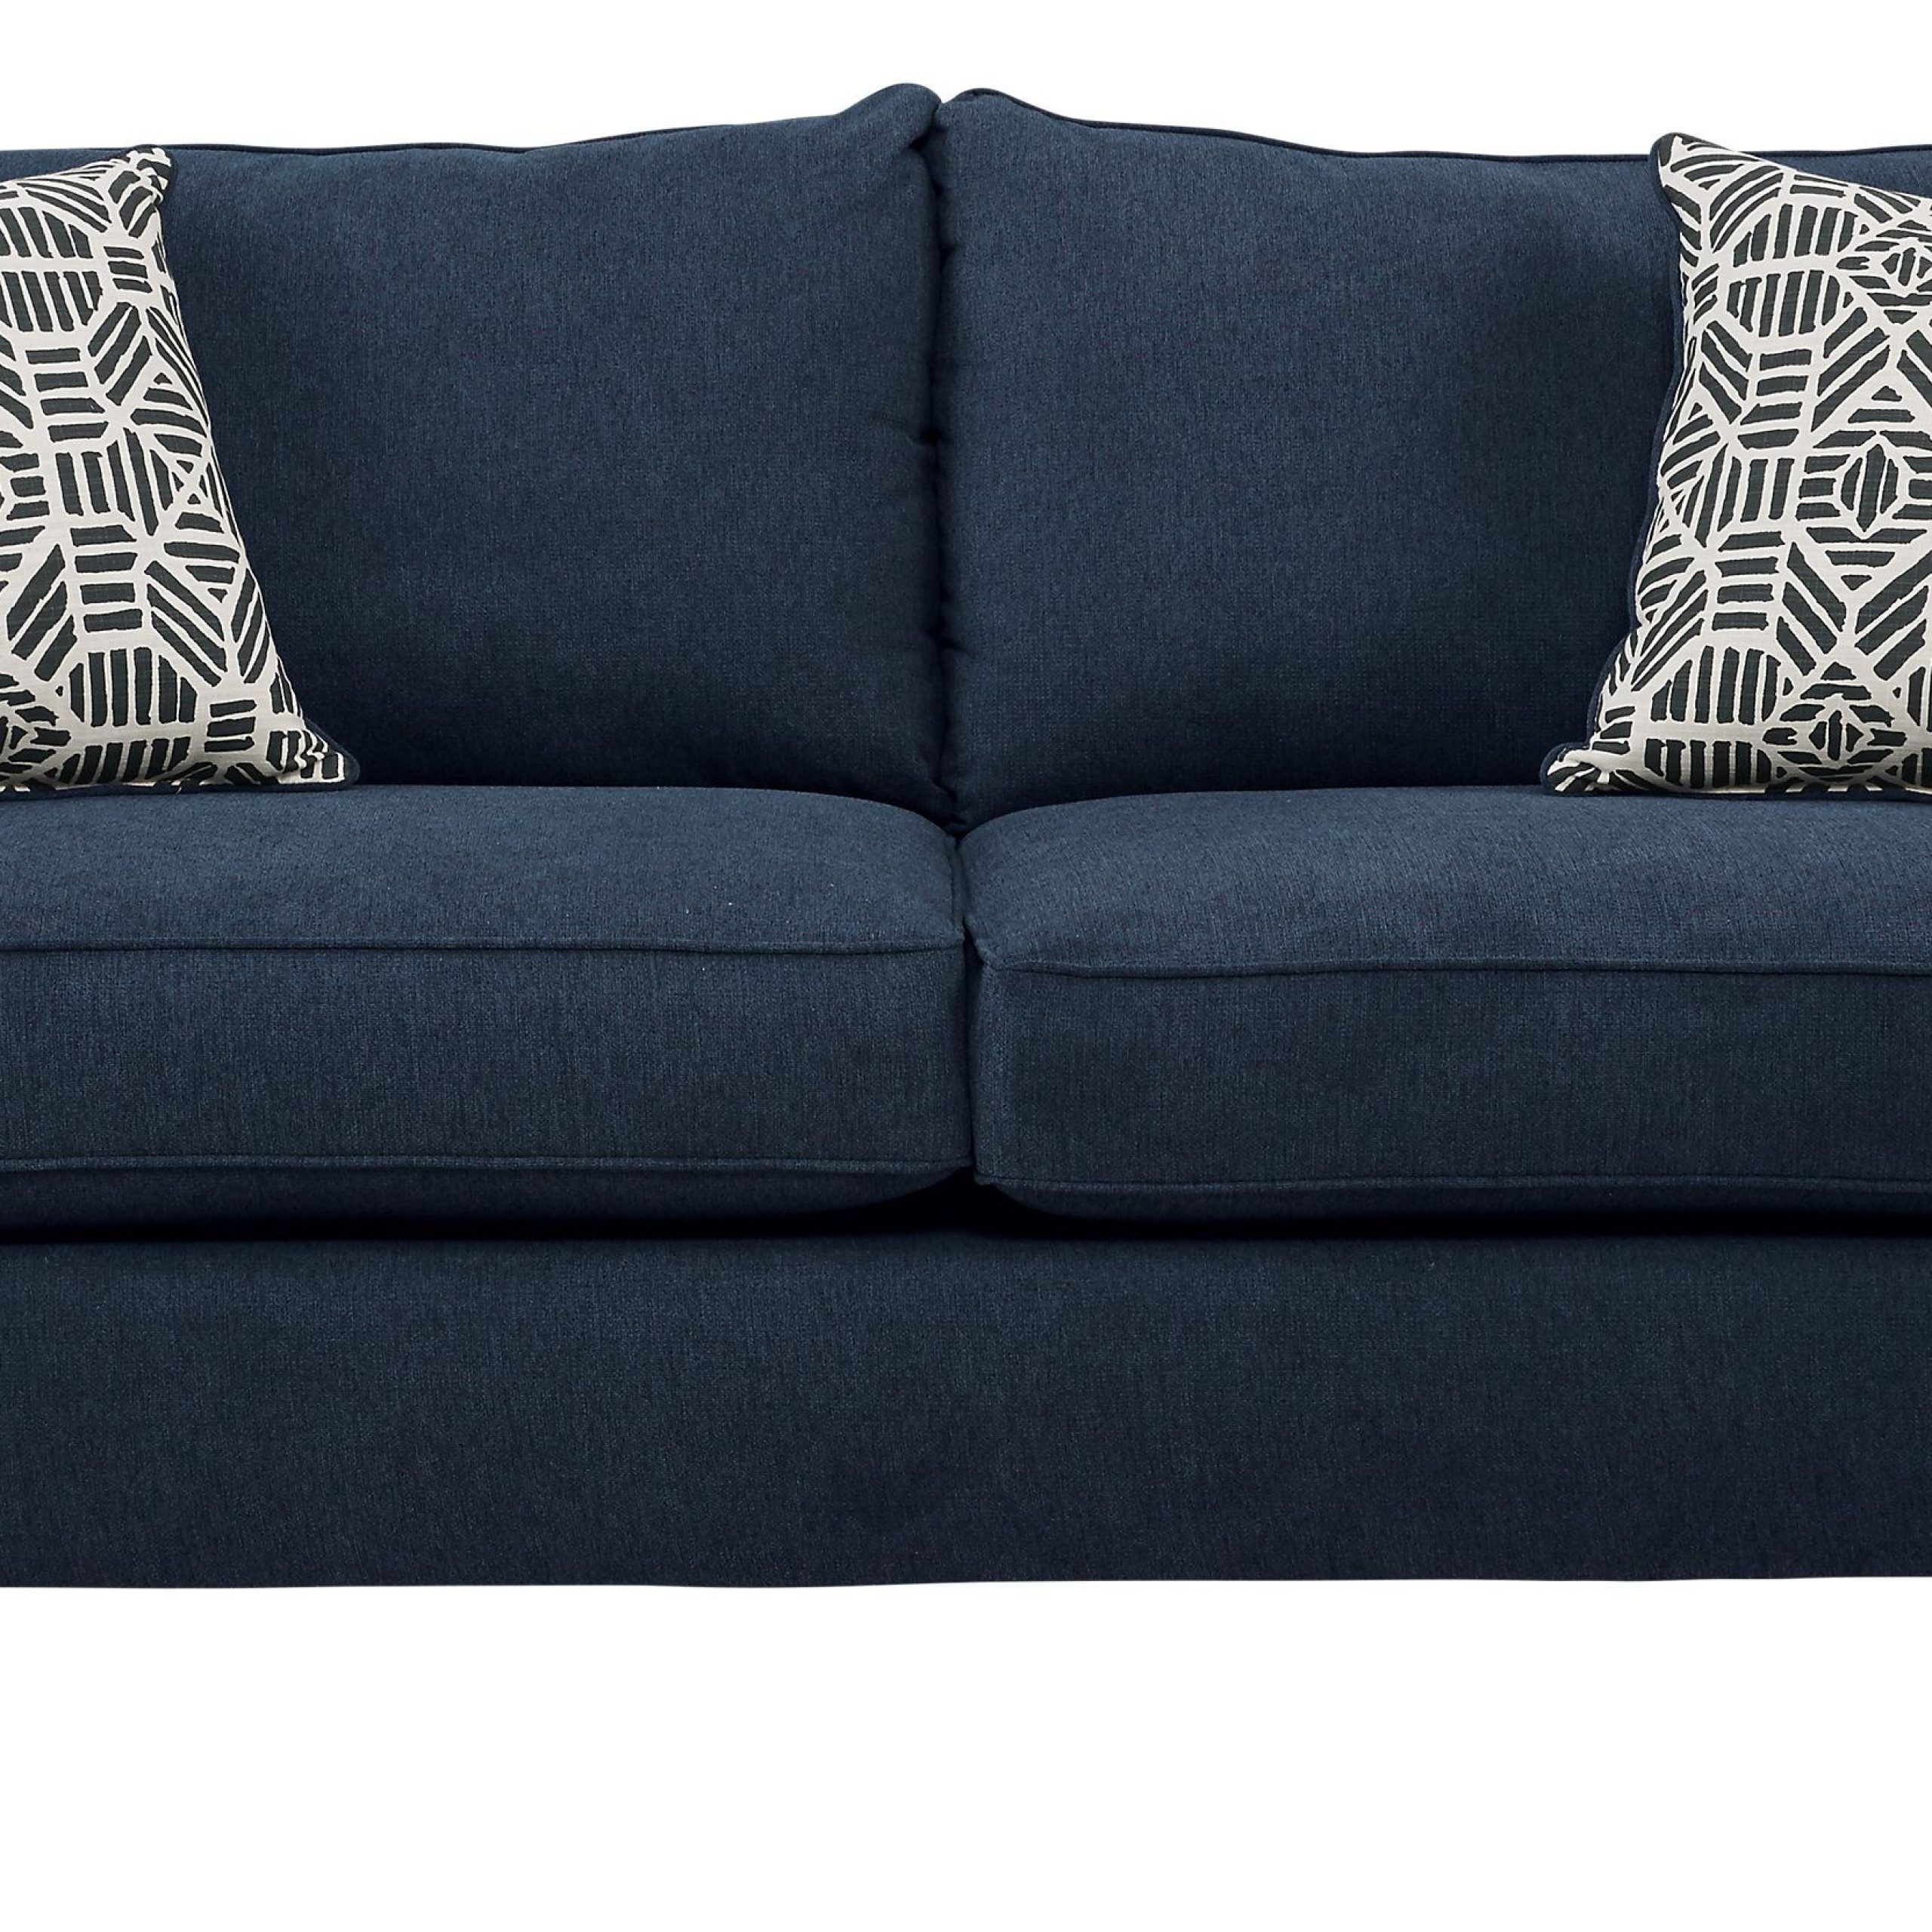 Emsworth Navy Sleeper Sofa – Casual, Textured Sofa Bar, Sofa Couch For Navy Sleeper Sofa Couches (View 2 of 20)